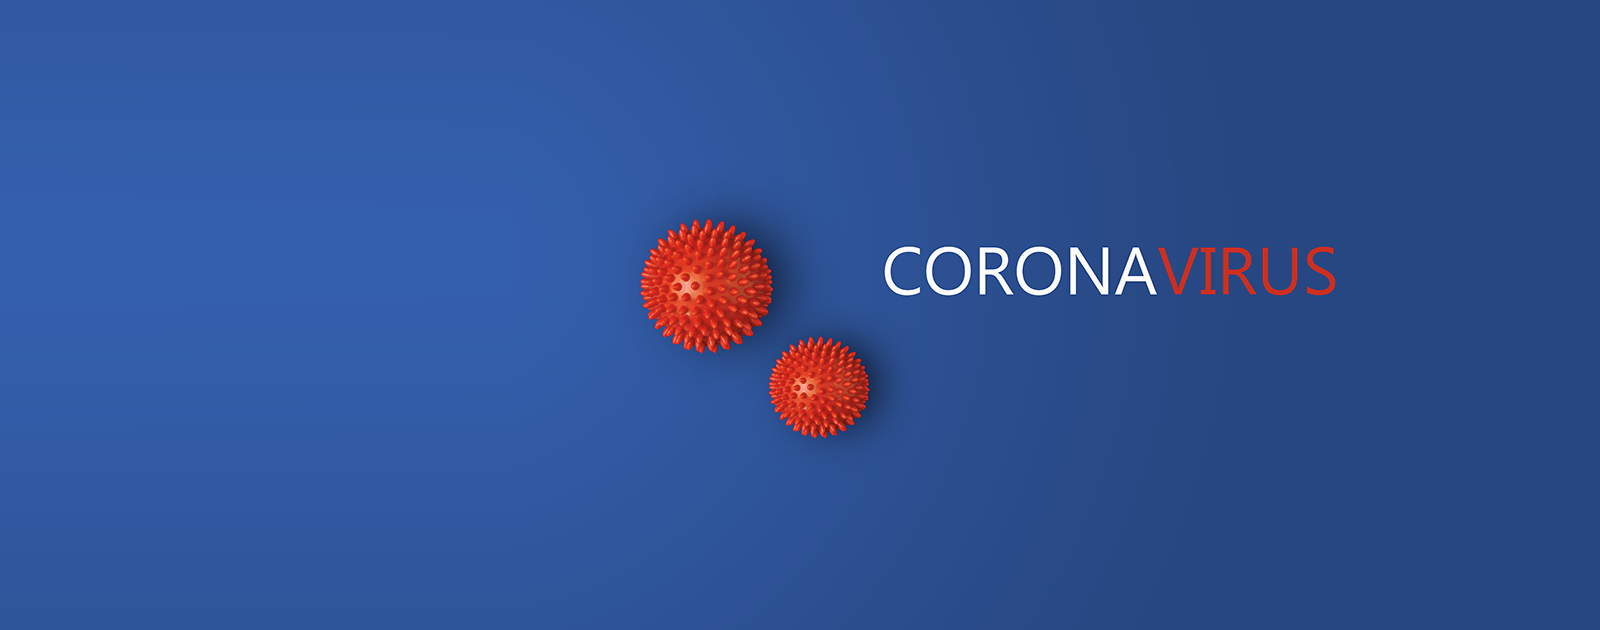 Wichtige Information für unsere Mitglieder zum Corona Virus ...